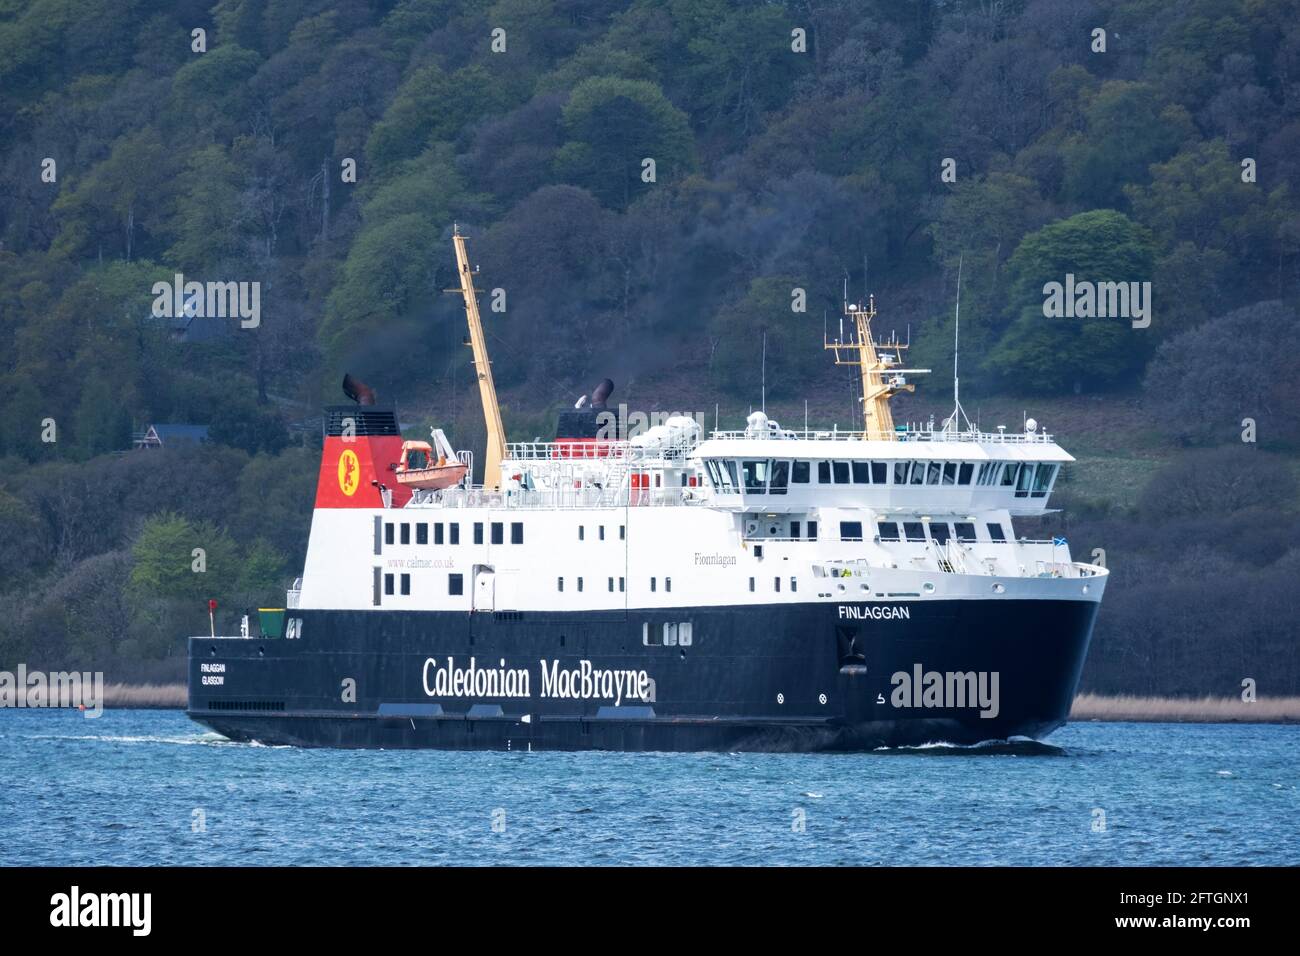 El Caledonian MacBrayne MV Finlaggan llegando a la terminal de ferries de Kennacraig, West Loch Tarbert, Argyll. Foto de stock